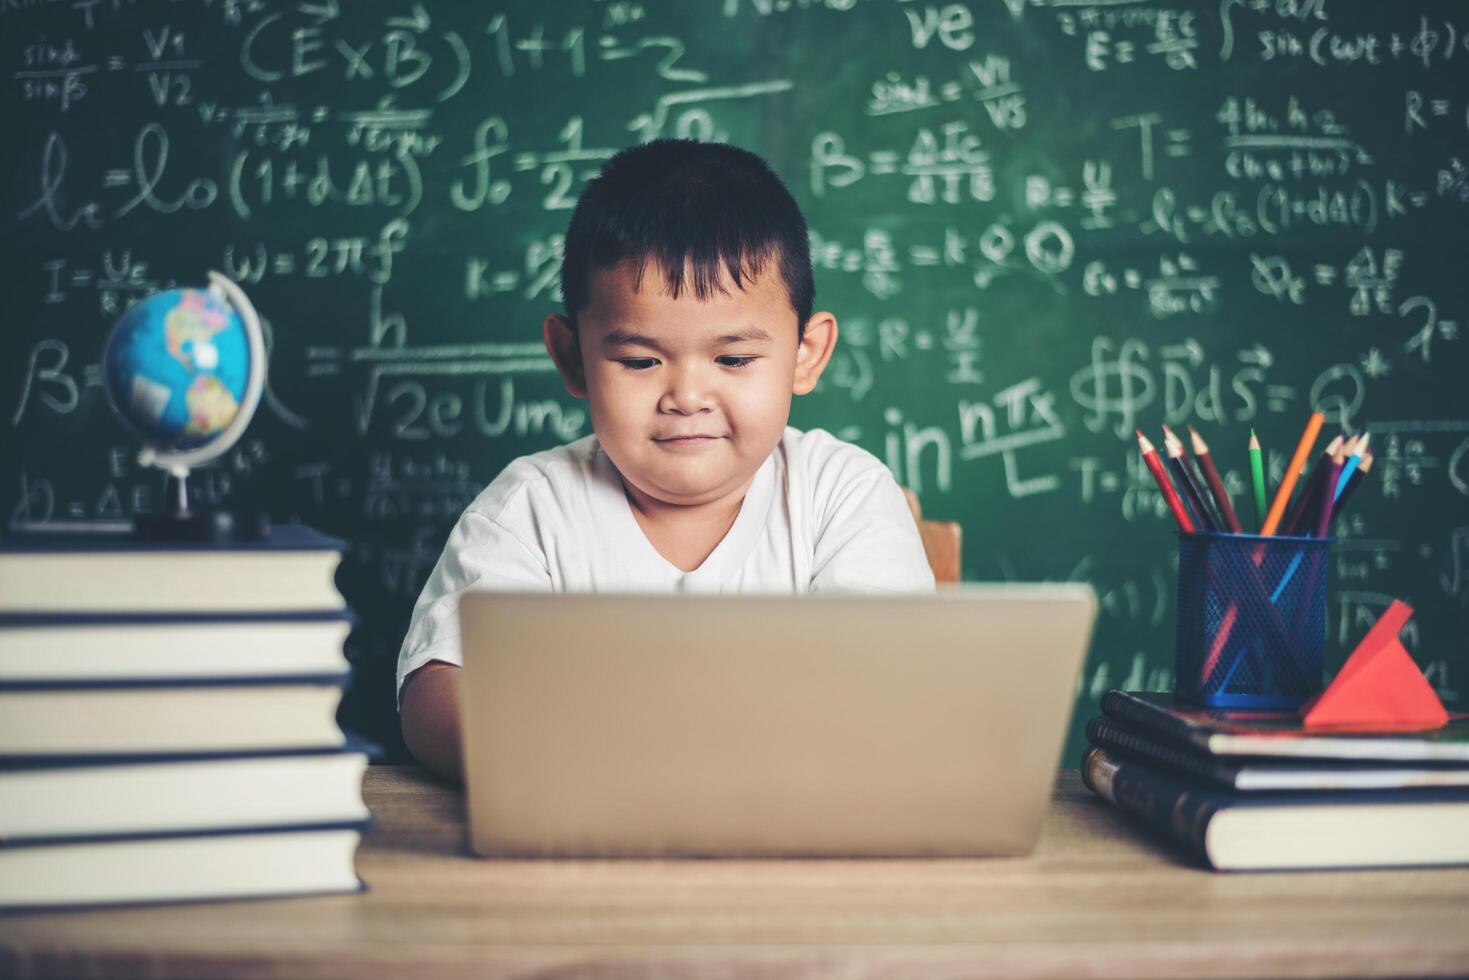 criança usa laptop de computador em sala de aula. foto